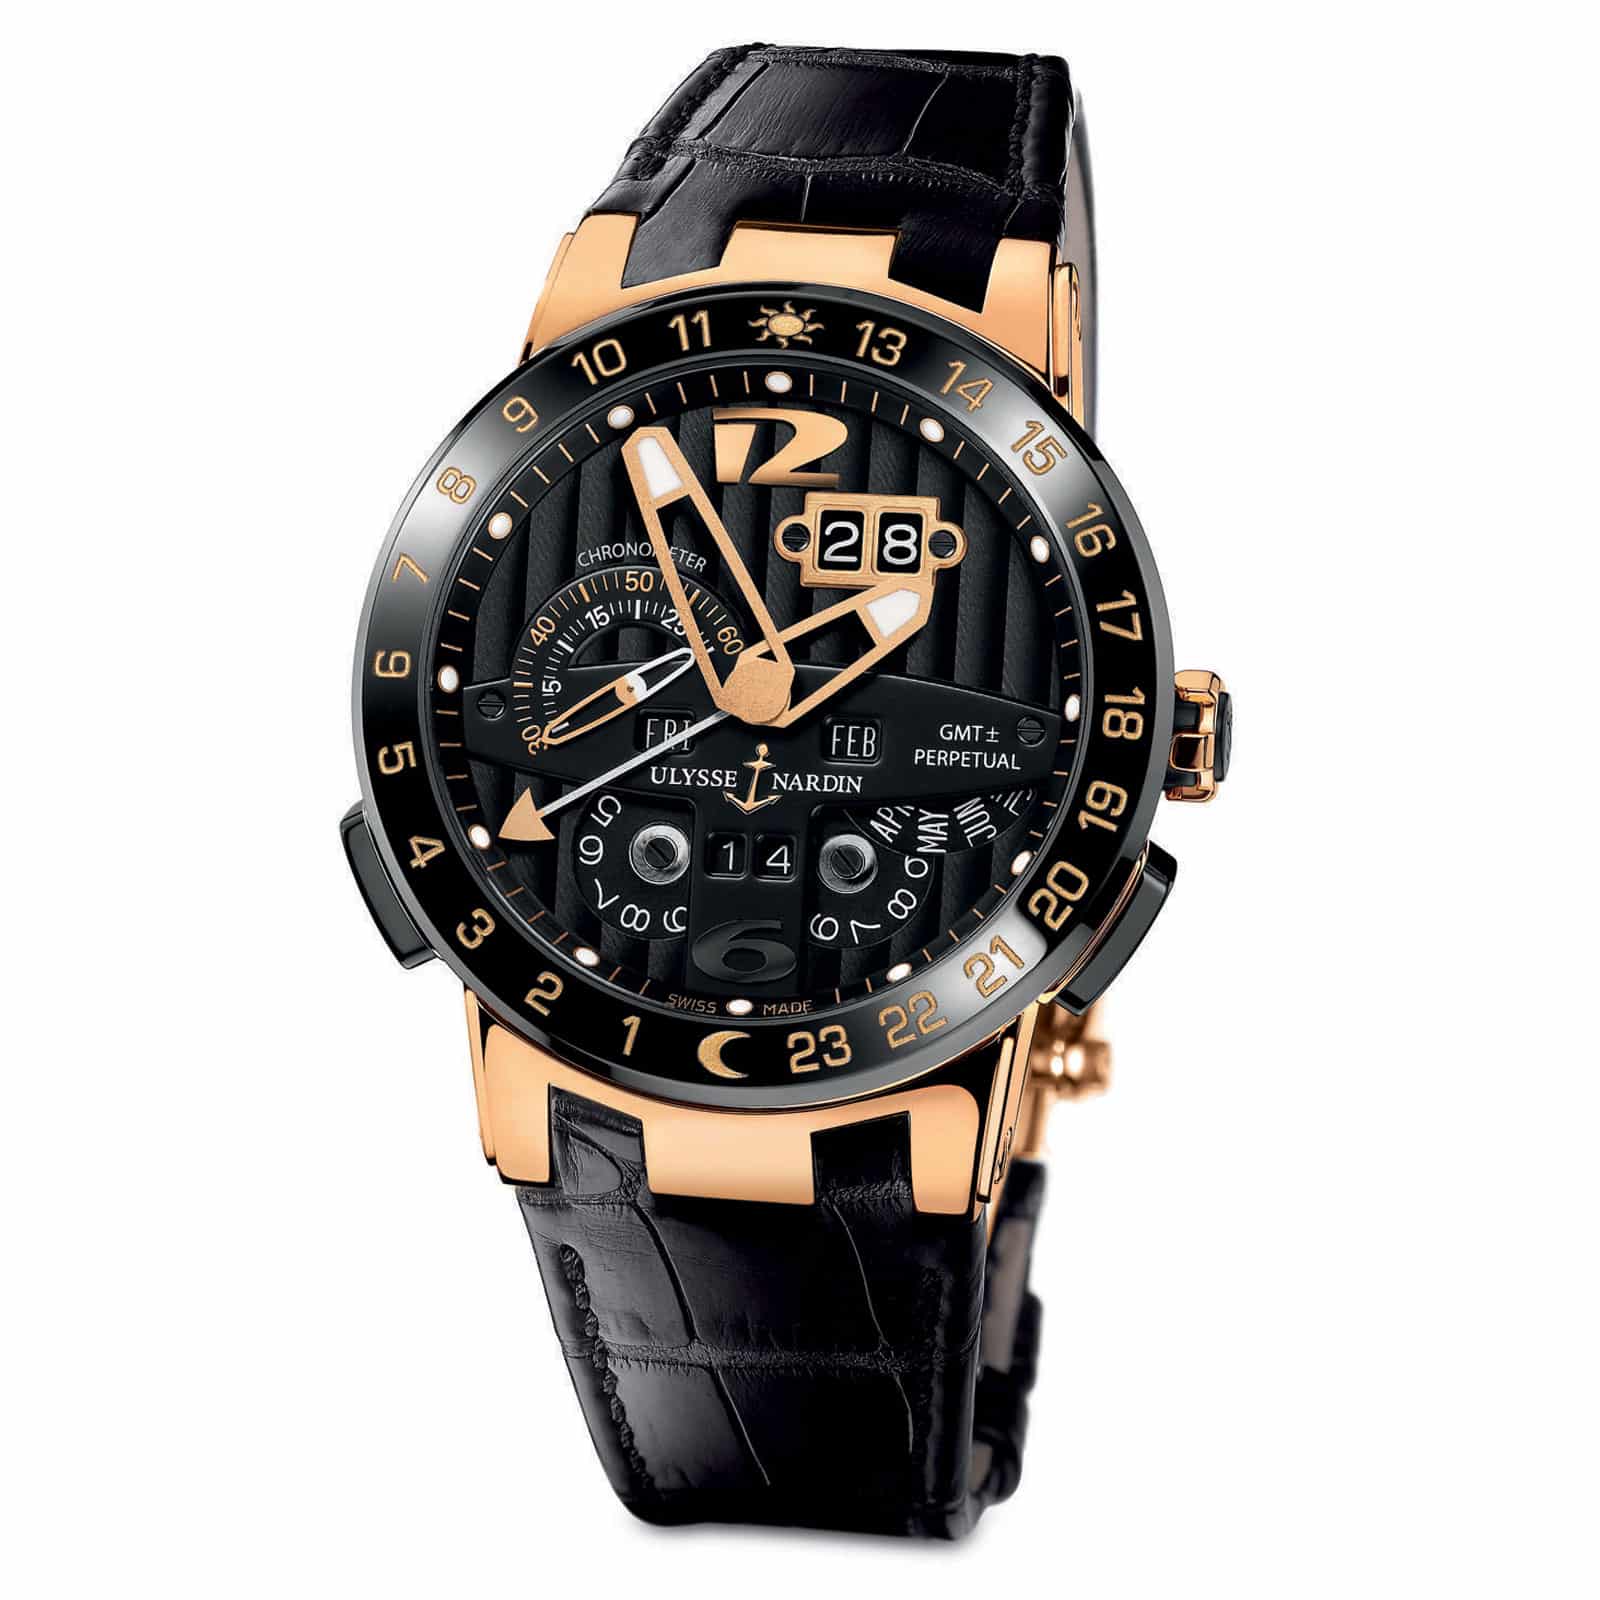 Часы копии часов наручные часы. Часы Улисс Нордин Toro. Часы Ulysse Nardin el Toro GMT Perpetual. Ulysse Nardin 500 Limited. Часы швейцарские мужские Улисс Нордин.